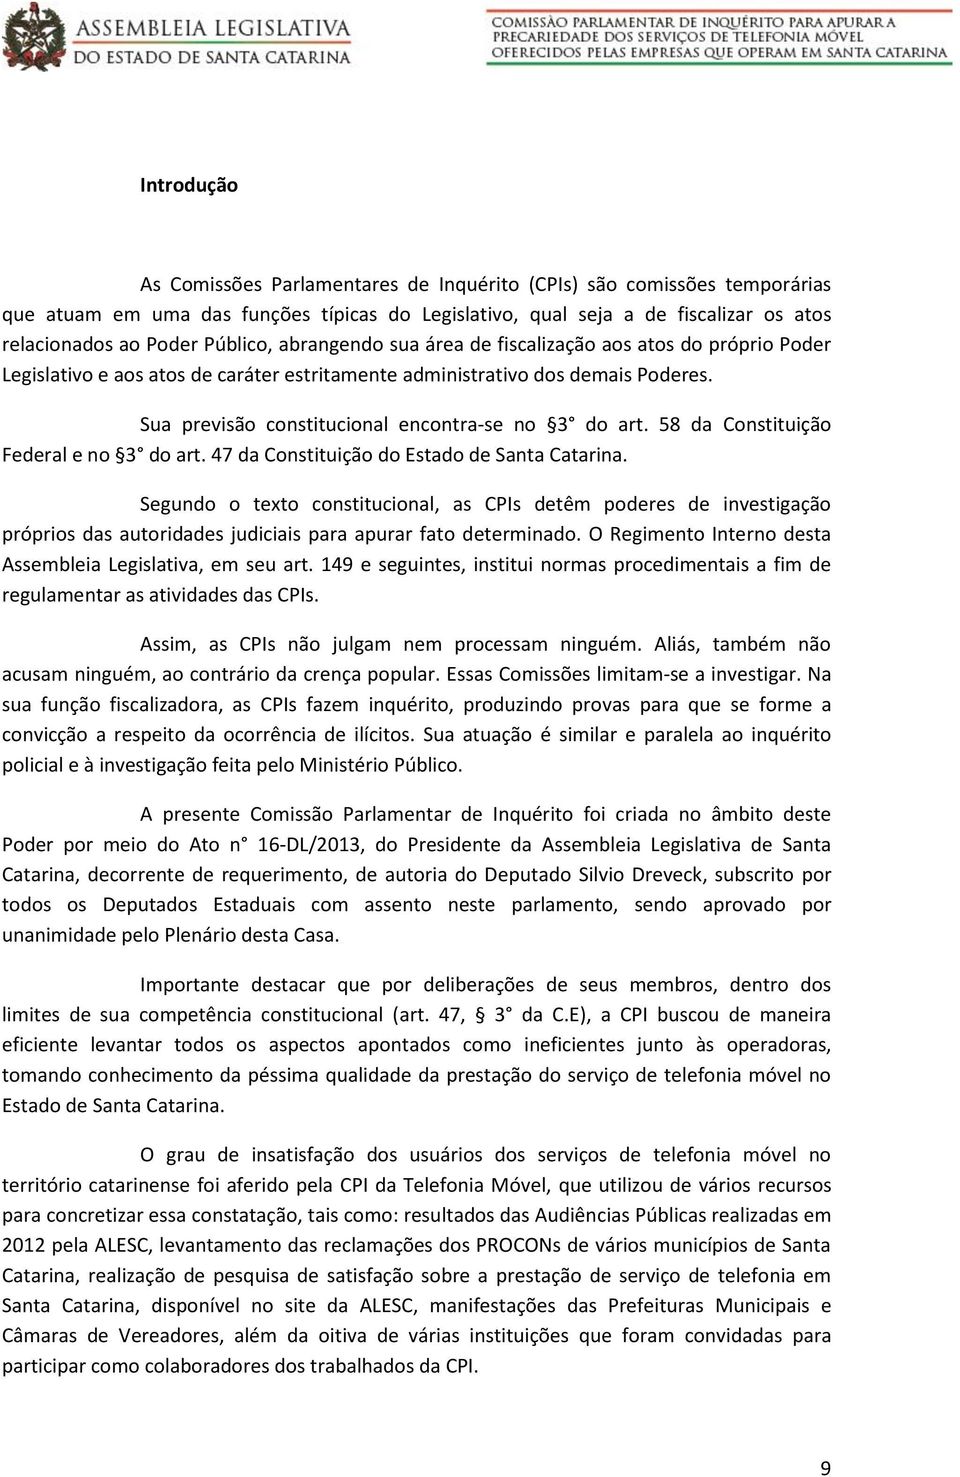 Sua previsão constitucional encontra-se no 3 do art. 58 da Constituição Federal e no 3 do art. 47 da Constituição do Estado de Santa Catarina.